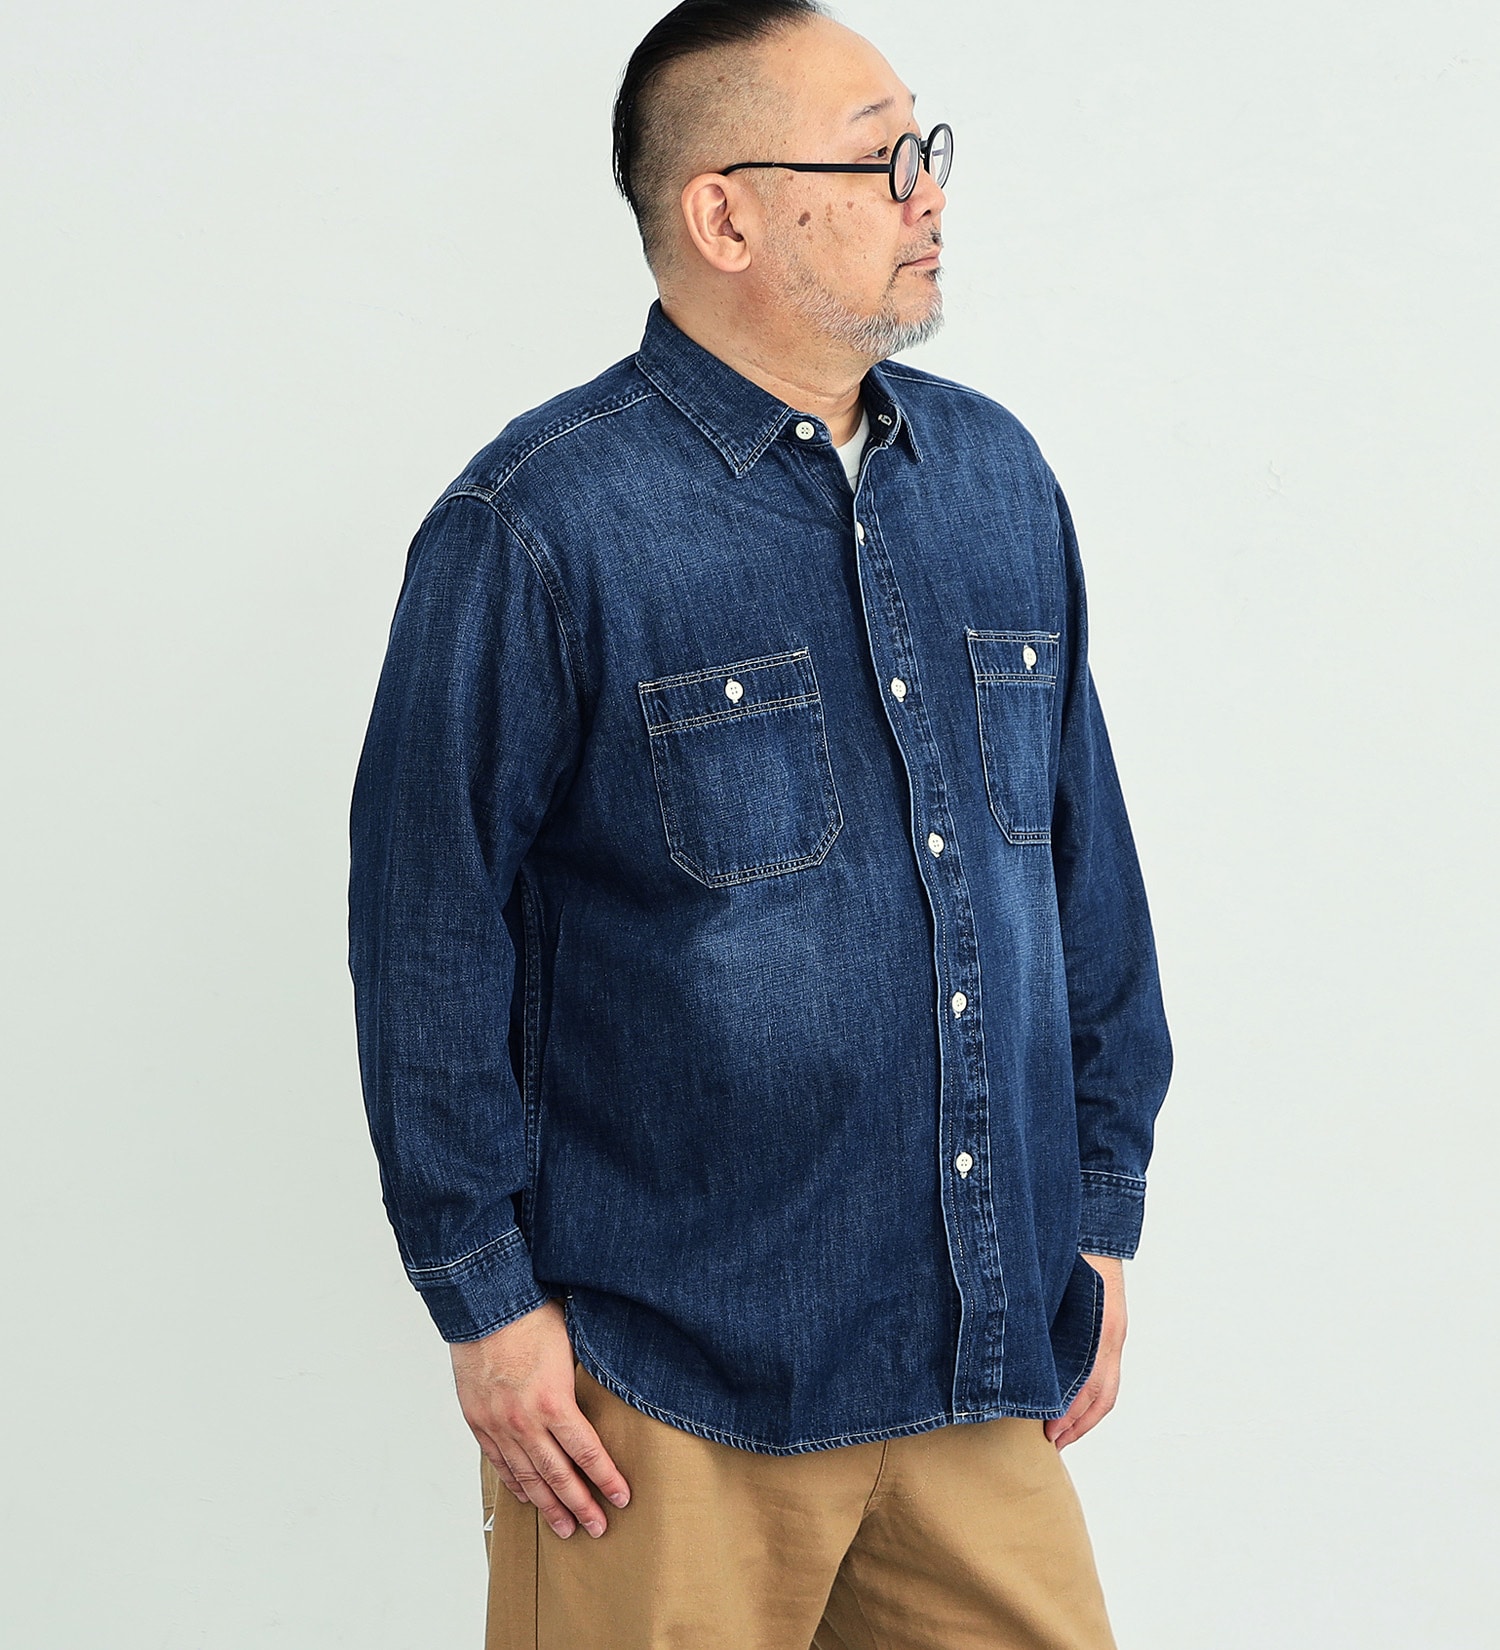 EDWIN(エドウイン)の【大きいサイズ】ワークシャツ 長袖|トップス/シャツ/ブラウス/メンズ|中色ブルー